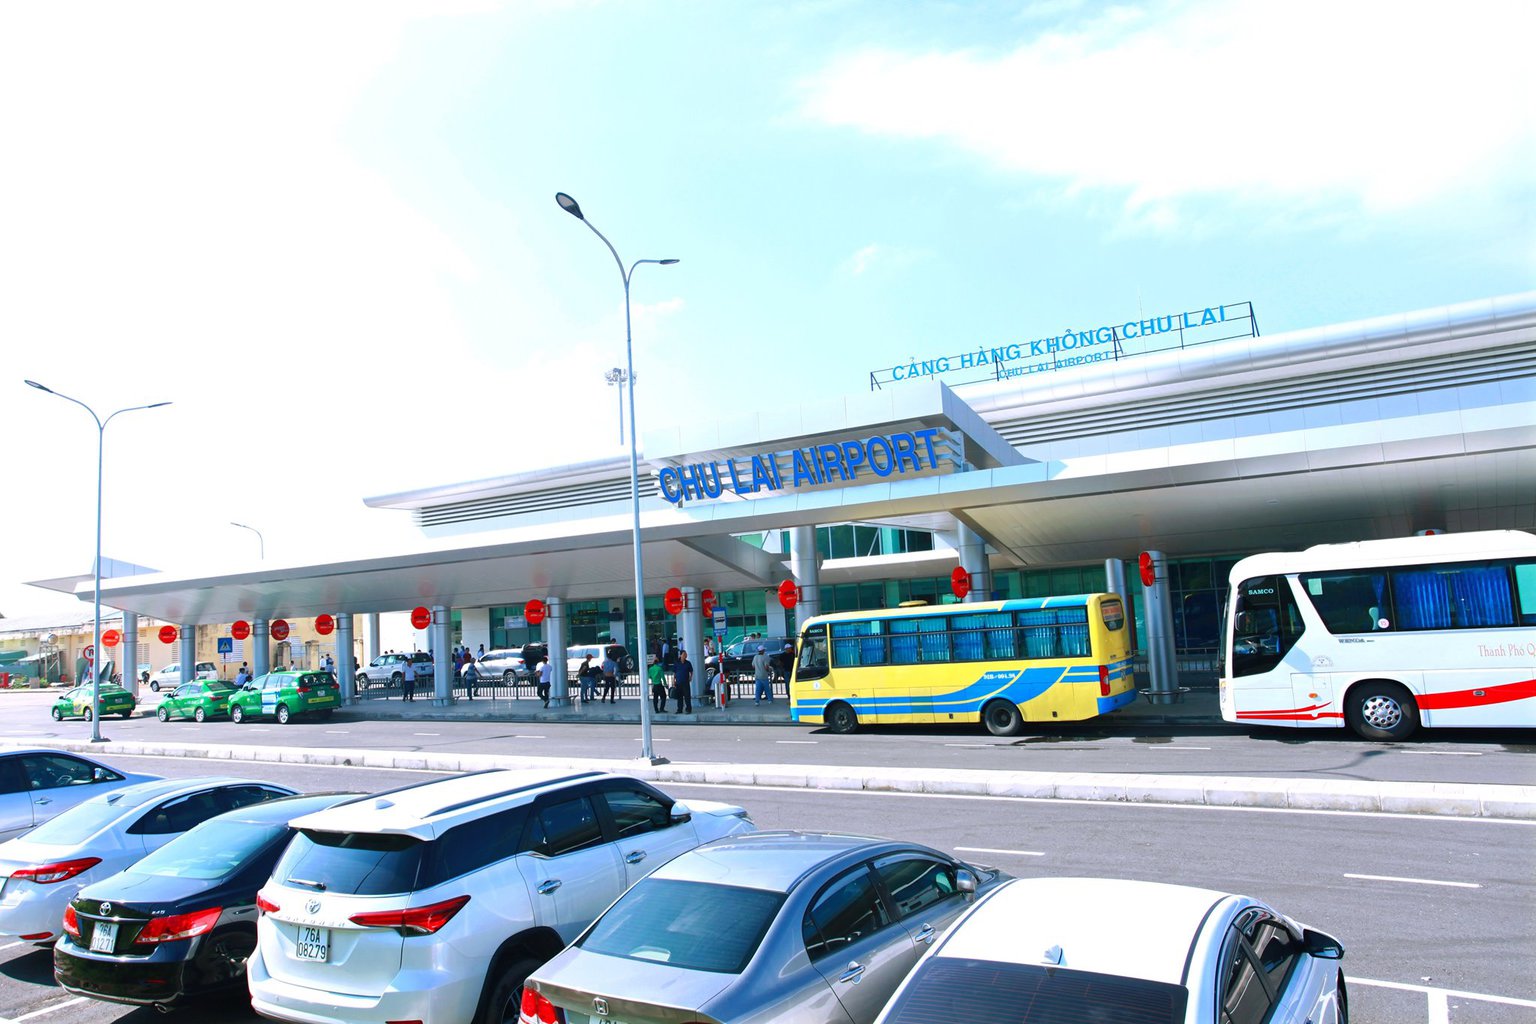 Hoi An Airport- Culture Pham Travel